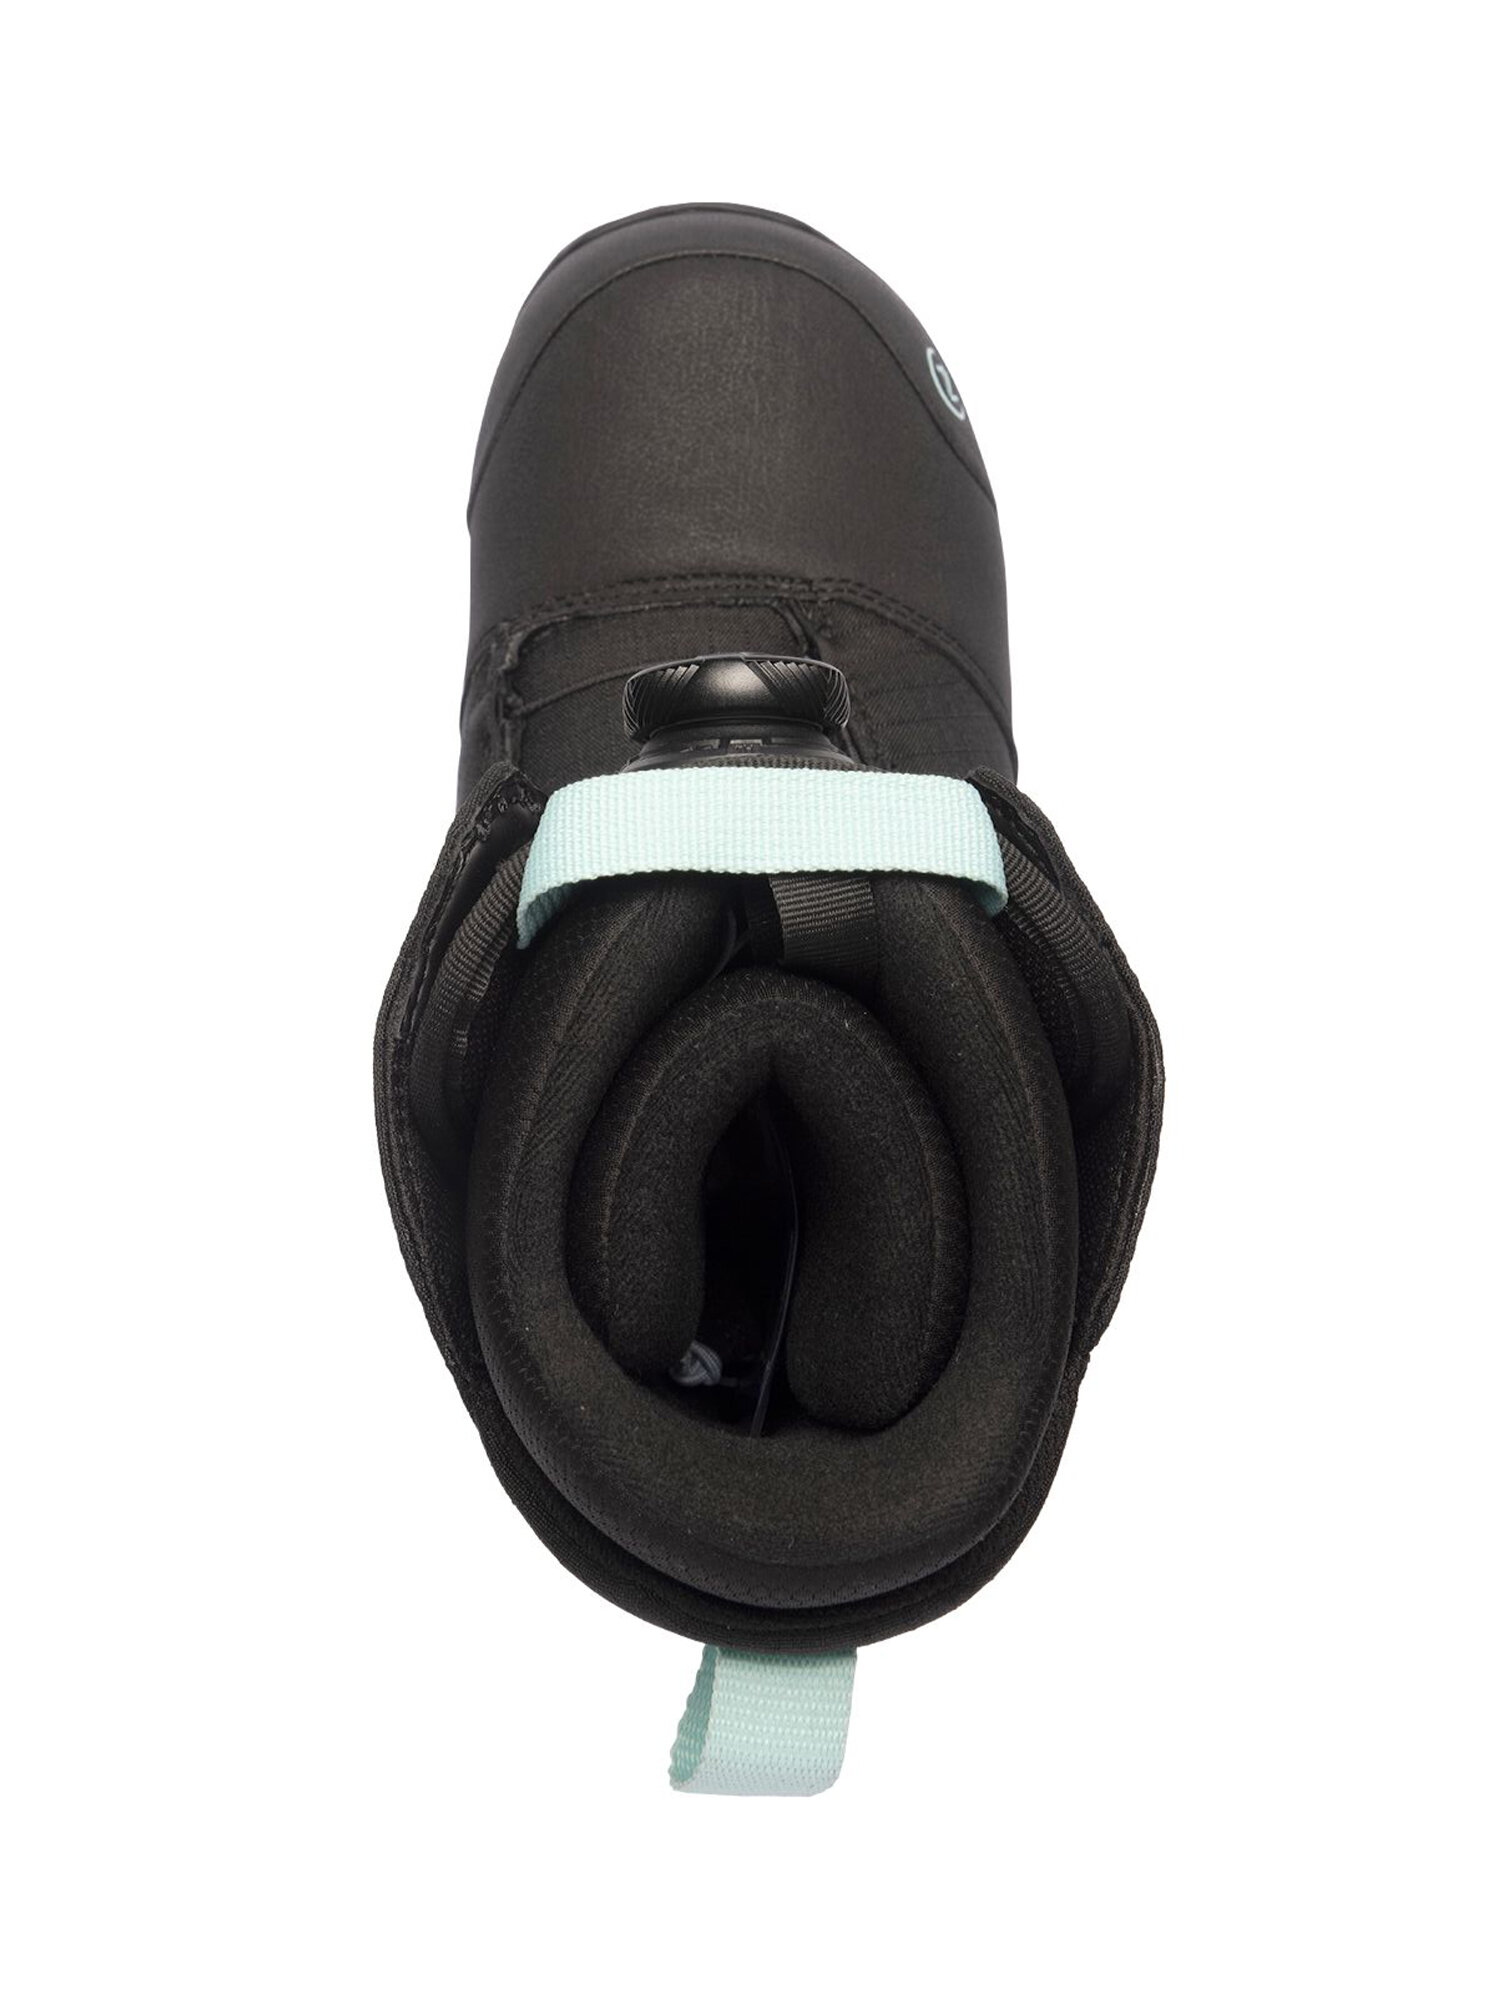 Ботинки для сноуборда NIDECKER Sierra W Black (US:7,5)